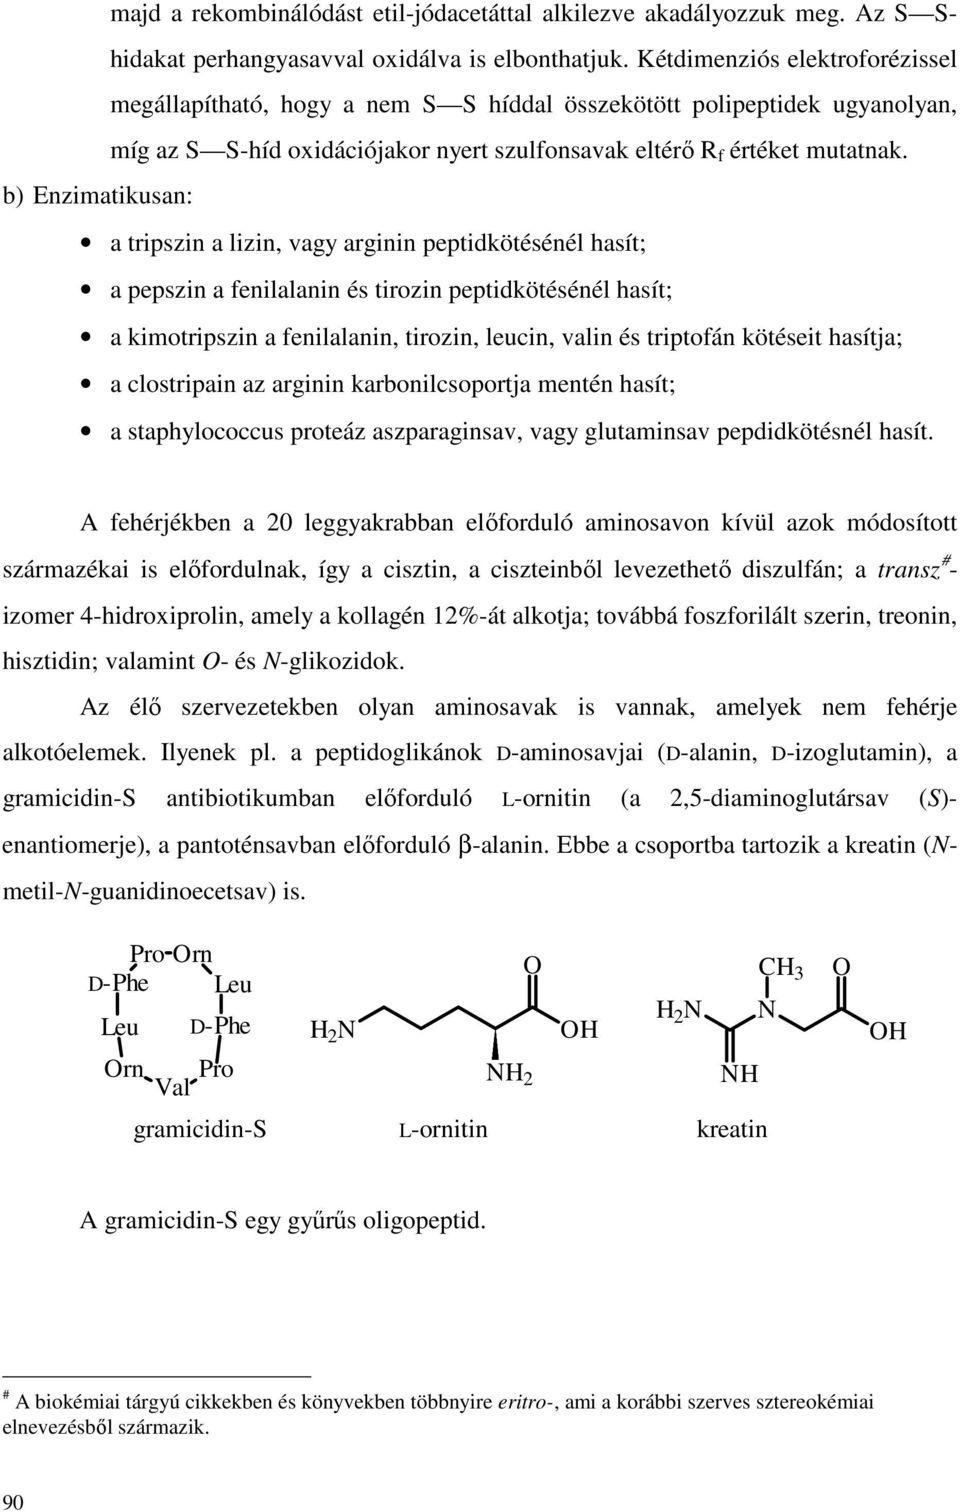 b) Enzimatikusan: a tripszin a lizin, vagy arginin peptidkötésénél hasít; a pepszin a fenilalanin és tirozin peptidkötésénél hasít; a kimotripszin a fenilalanin, tirozin, leucin, valin és triptofán